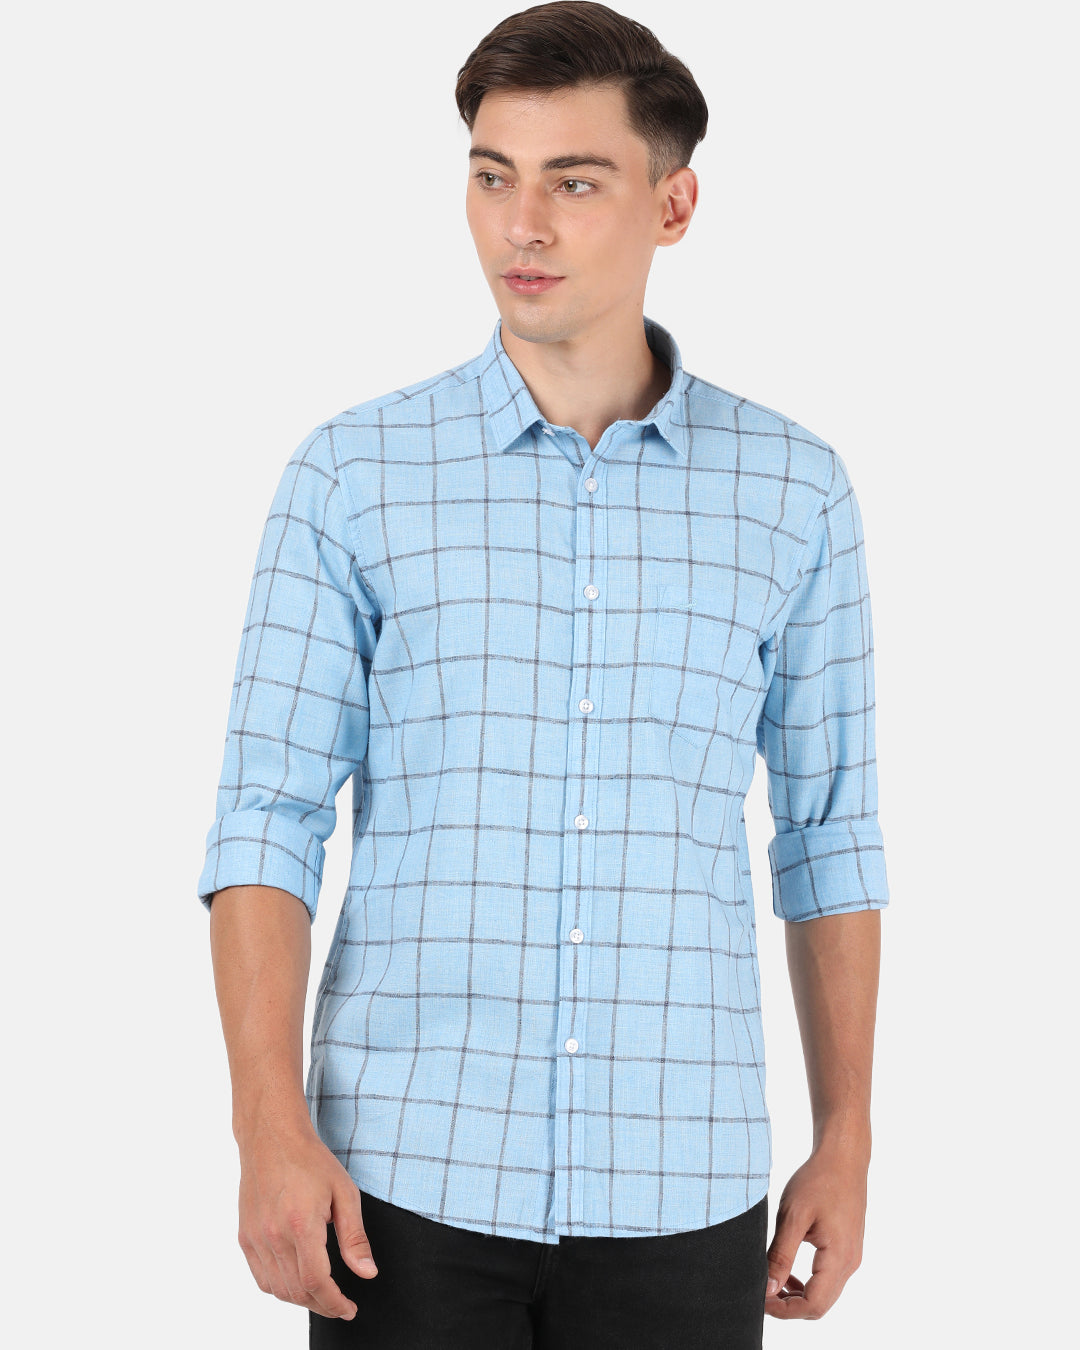 Crocodile Men's Linen Blend Stripe Shirt Khaki